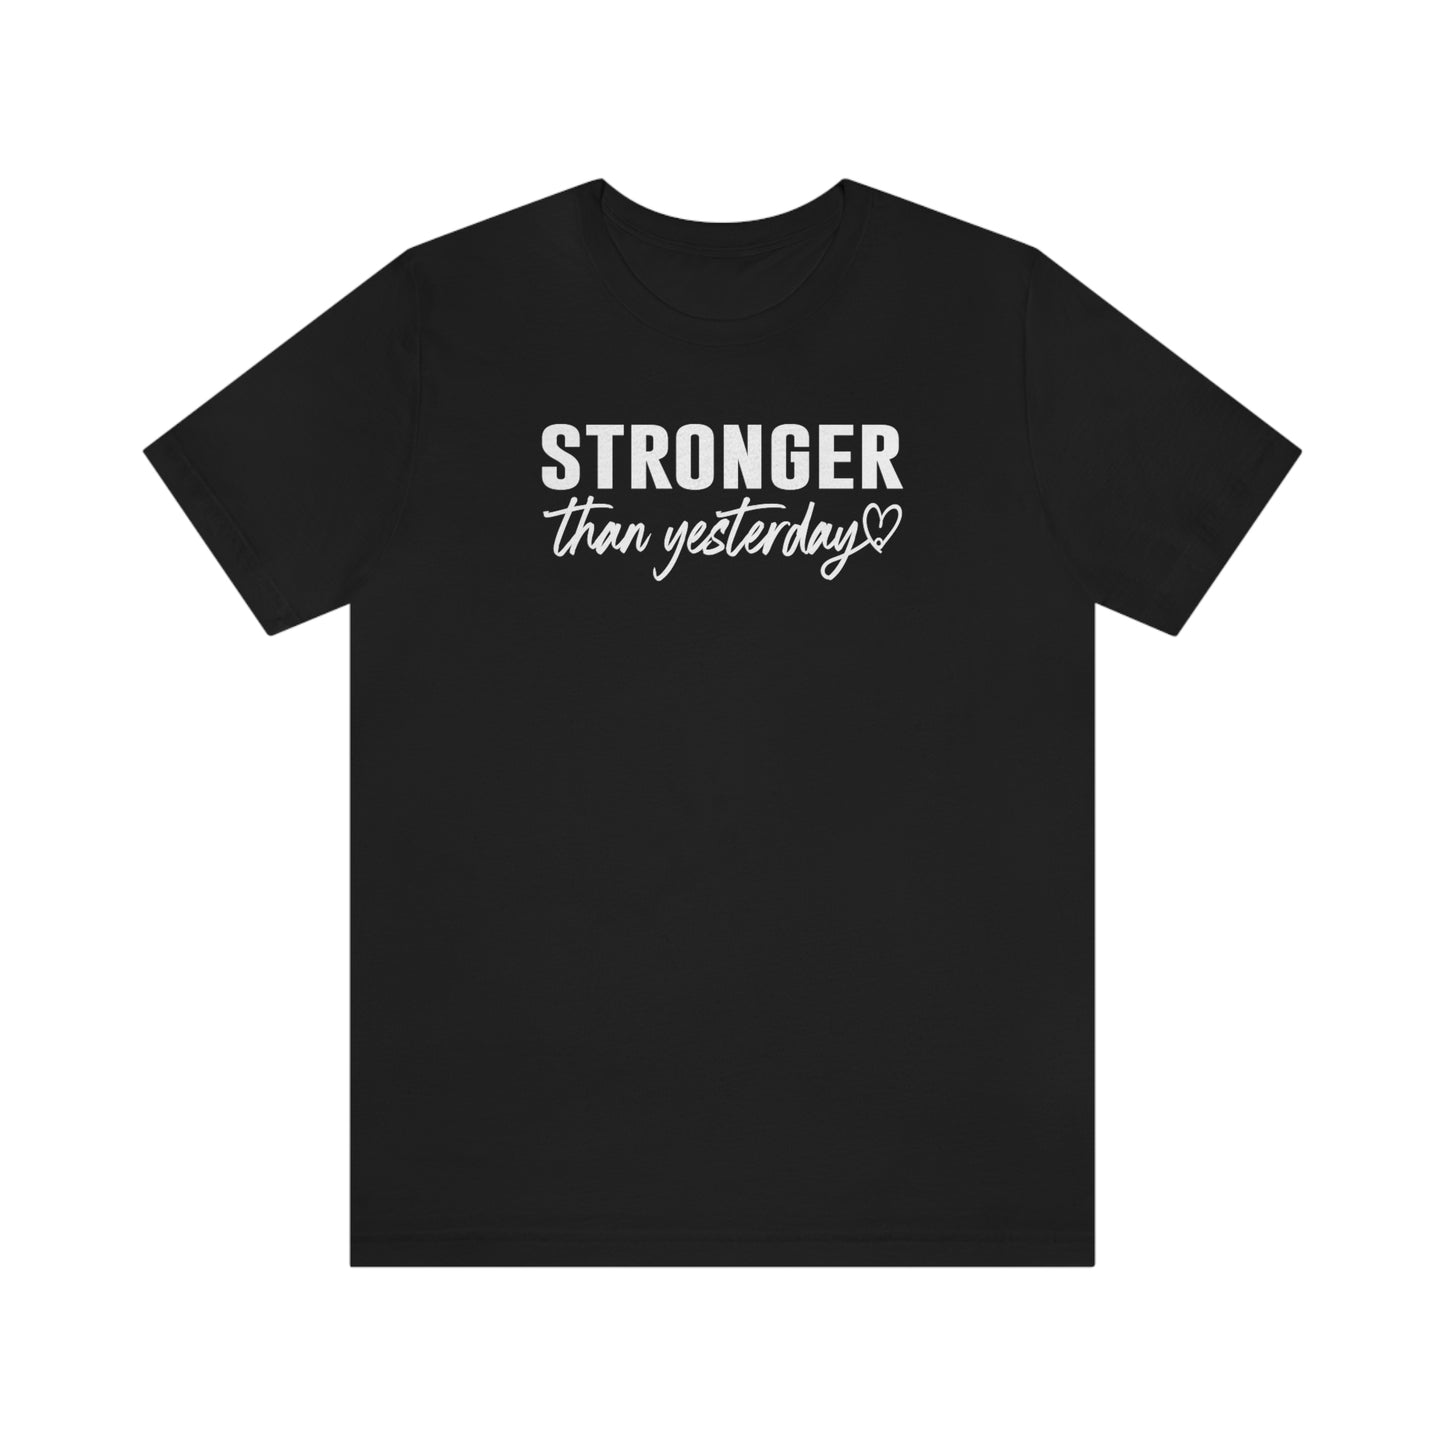 Stronger Than Yesterday Shirt, Inspirational T-Shirt, Motivational Shirts, Faith Shirt, Positive Shirt, Tee Shirt, Self Love Shirt